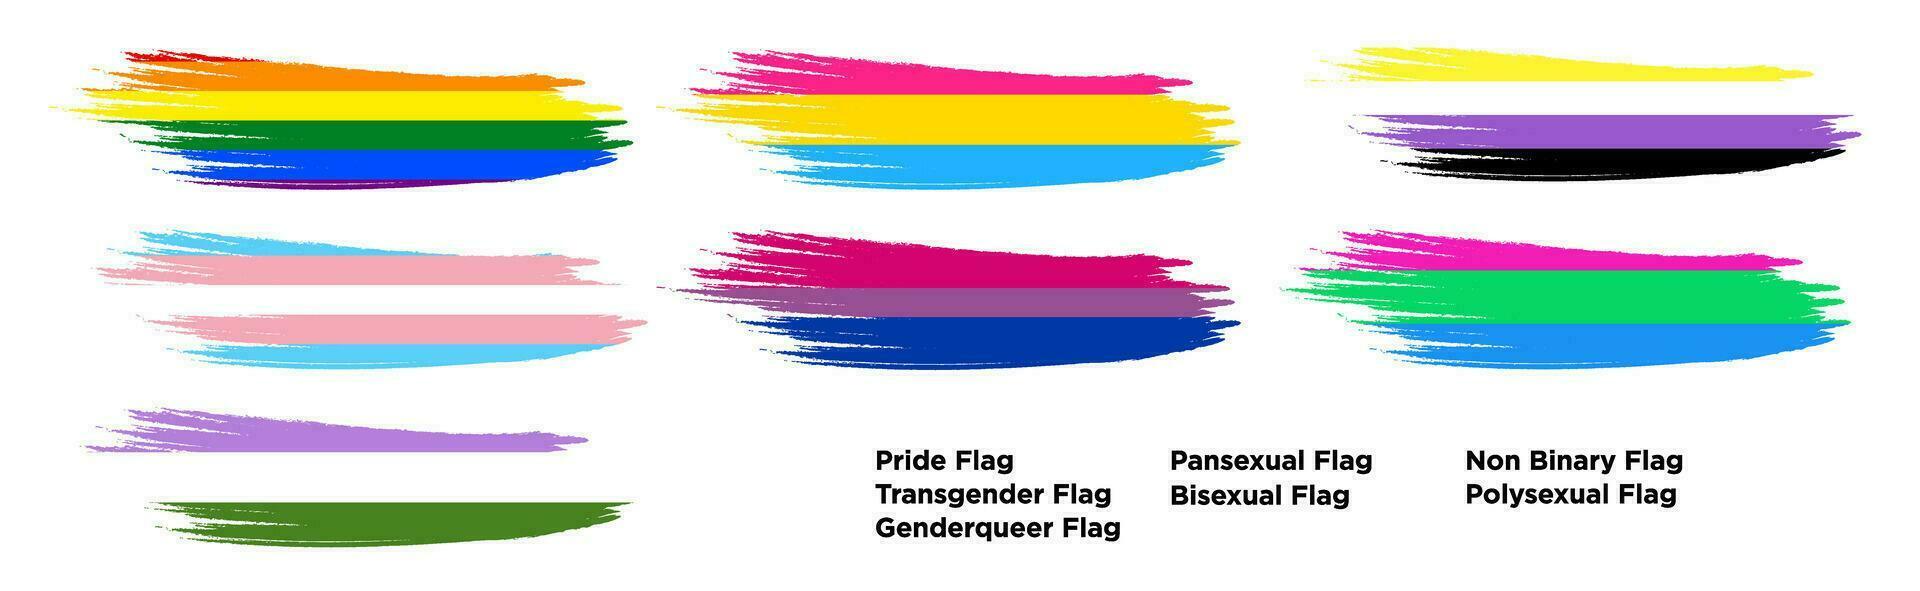 reeks van trots vlag borstel beroerte concept set. trots, transgender, genderqueer, panseksueel, biseksueel, niet binair, polyseksueel vlag. geïsoleerd Aan wit achtergrond. vector illustratie. eps 10.